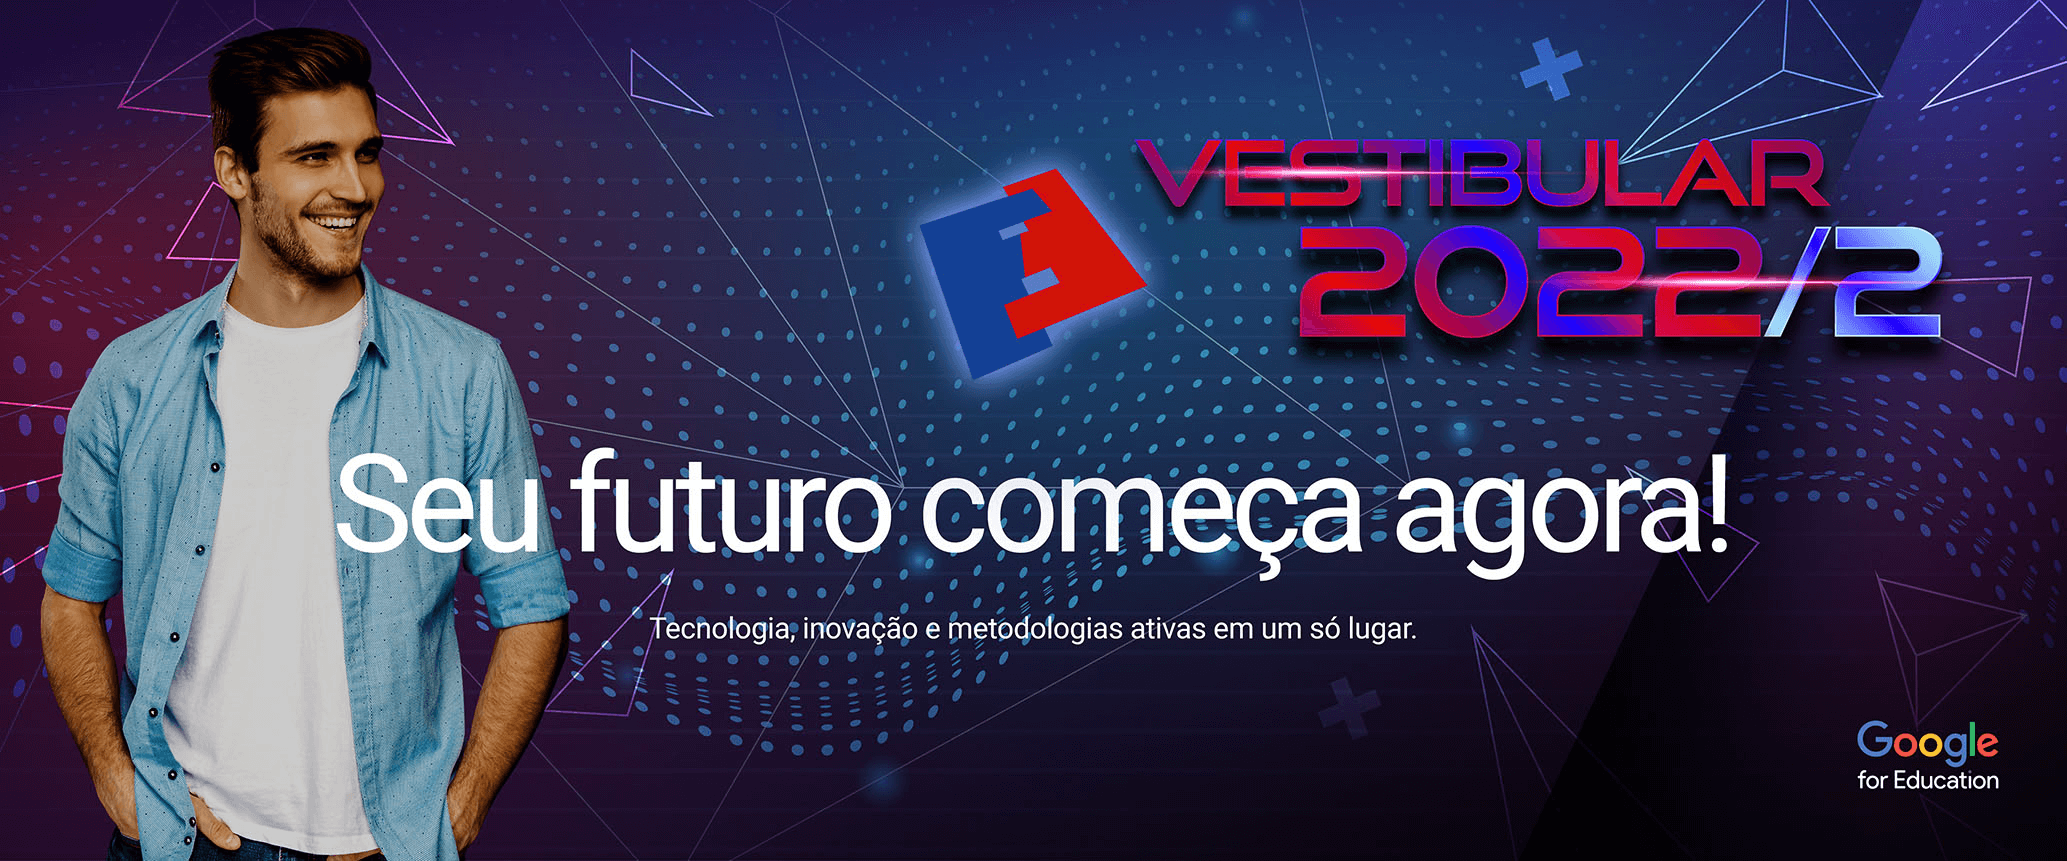 Vestibular-2022_funorte_slide_home_